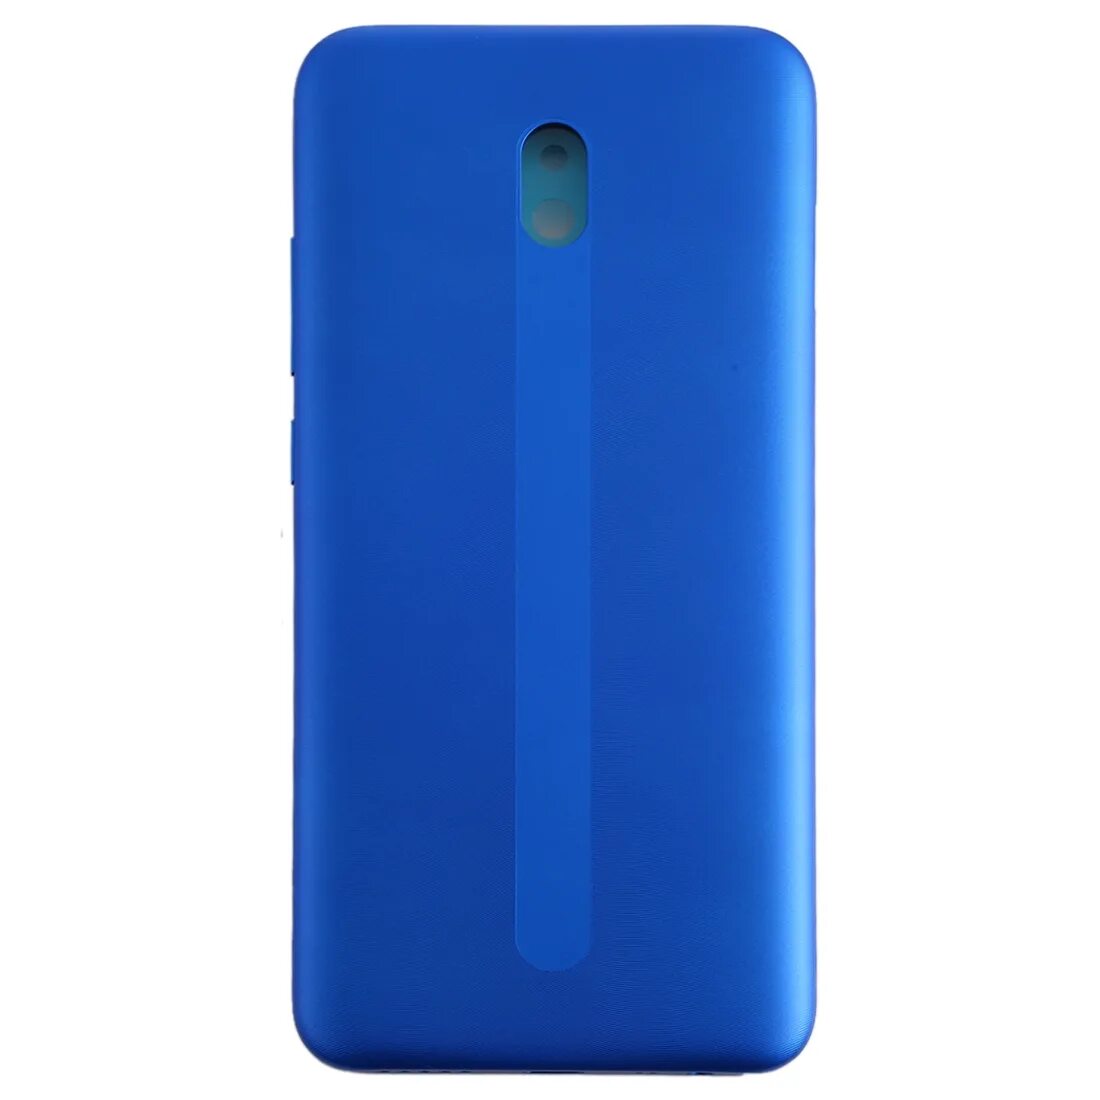 Задняя крышка для Xiaomi Redmi 8 (синий). Xiaomi Redmi синяя крышка. Редми m1908c3kg. Задняя крышка для Xiaomi Redmi 8a (m1908c3kg) (синий). Xiaomi redmi 8 крышка